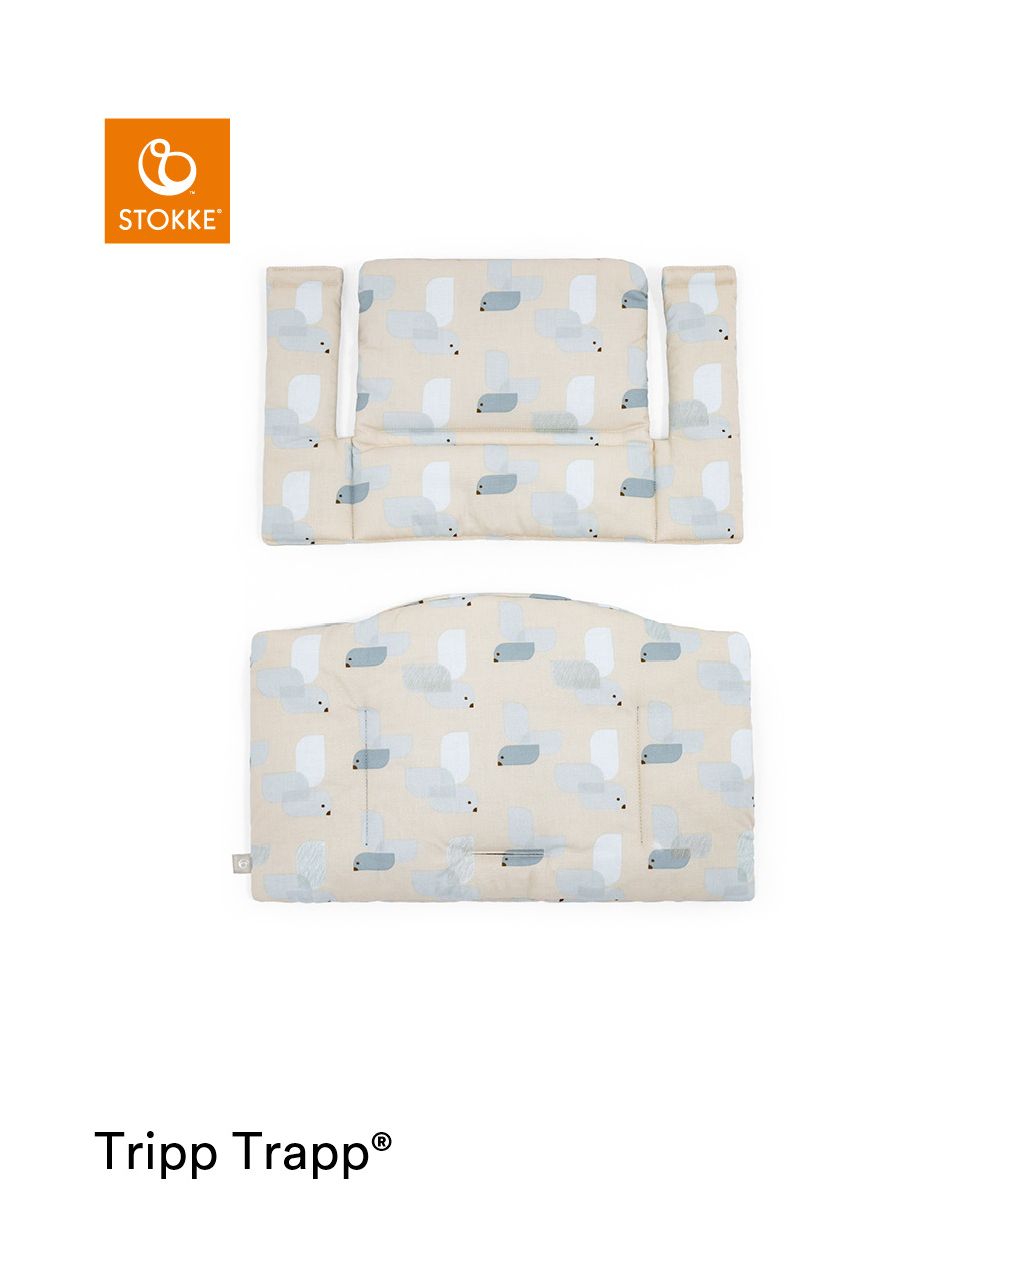 Tripp trapp® classic cushion birds blue ocs
cuscino per seggiolone, morbido e avvolgente per il tuo bambino - Stokke